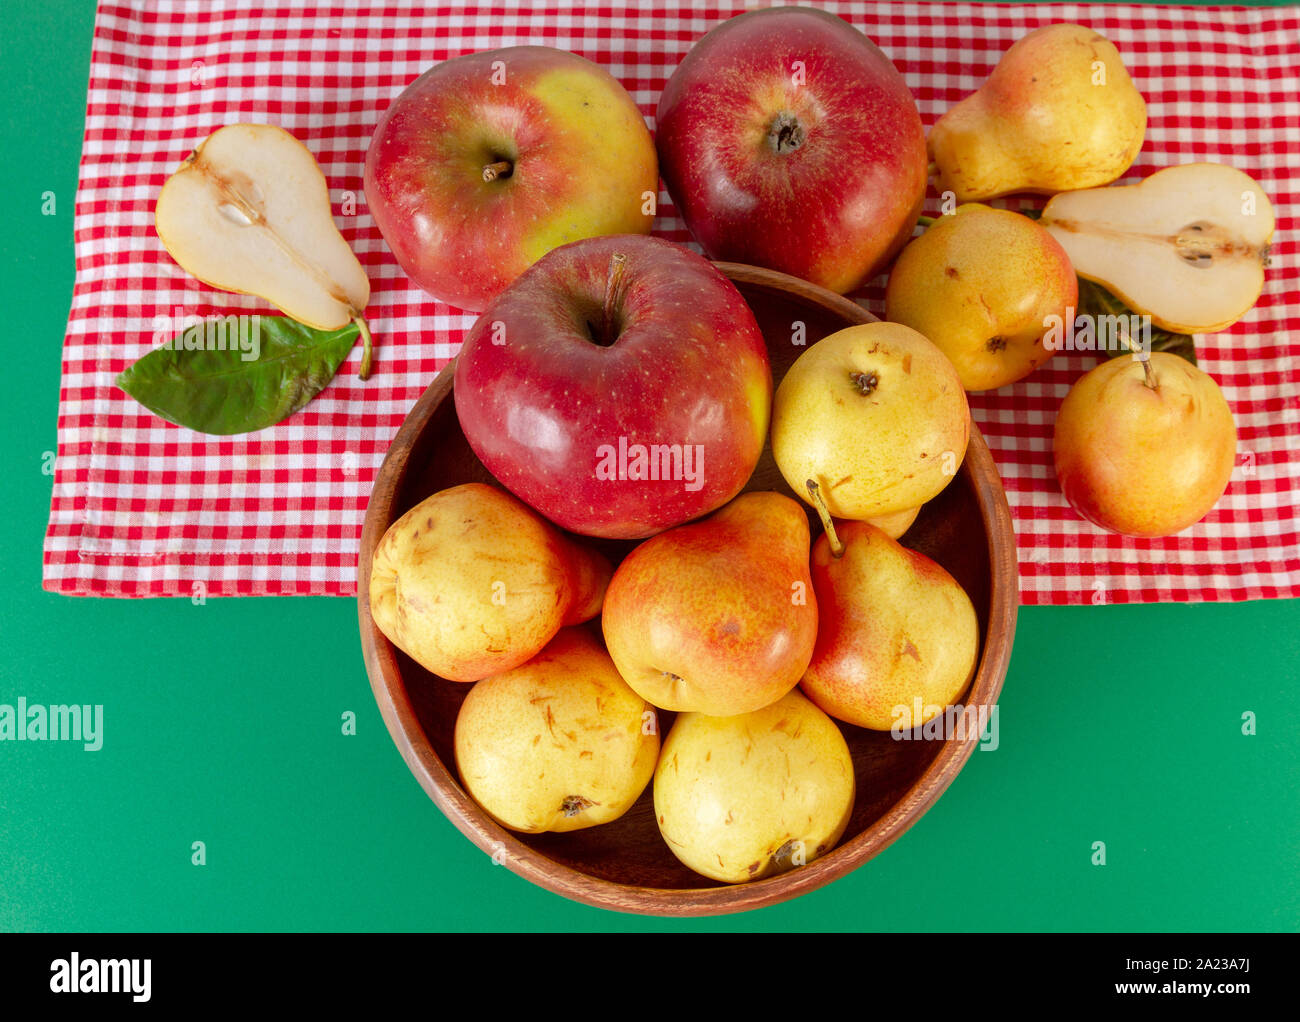 Herbst noch leben. Birne und Apfel am grünen Tisch mit Rot karierte Tischdecke. Rustikales Design. Stockfoto